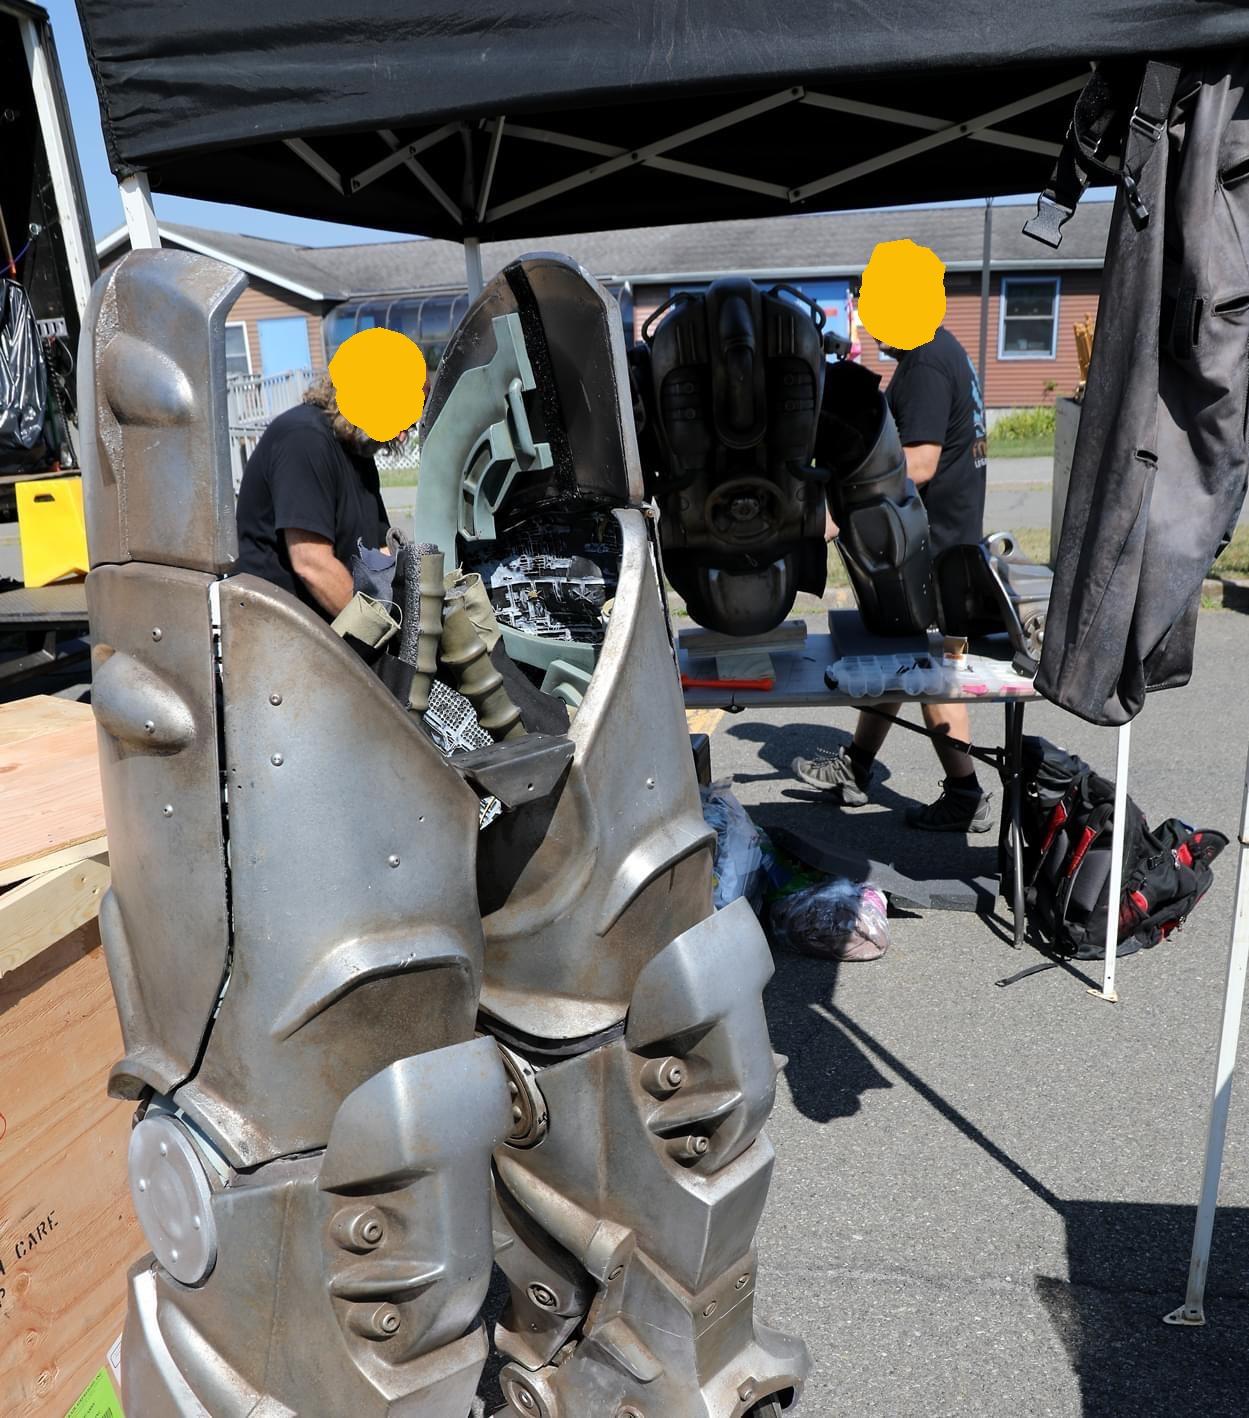 Power Armor z serialu „Fallout” podczas budowy za kulisami.